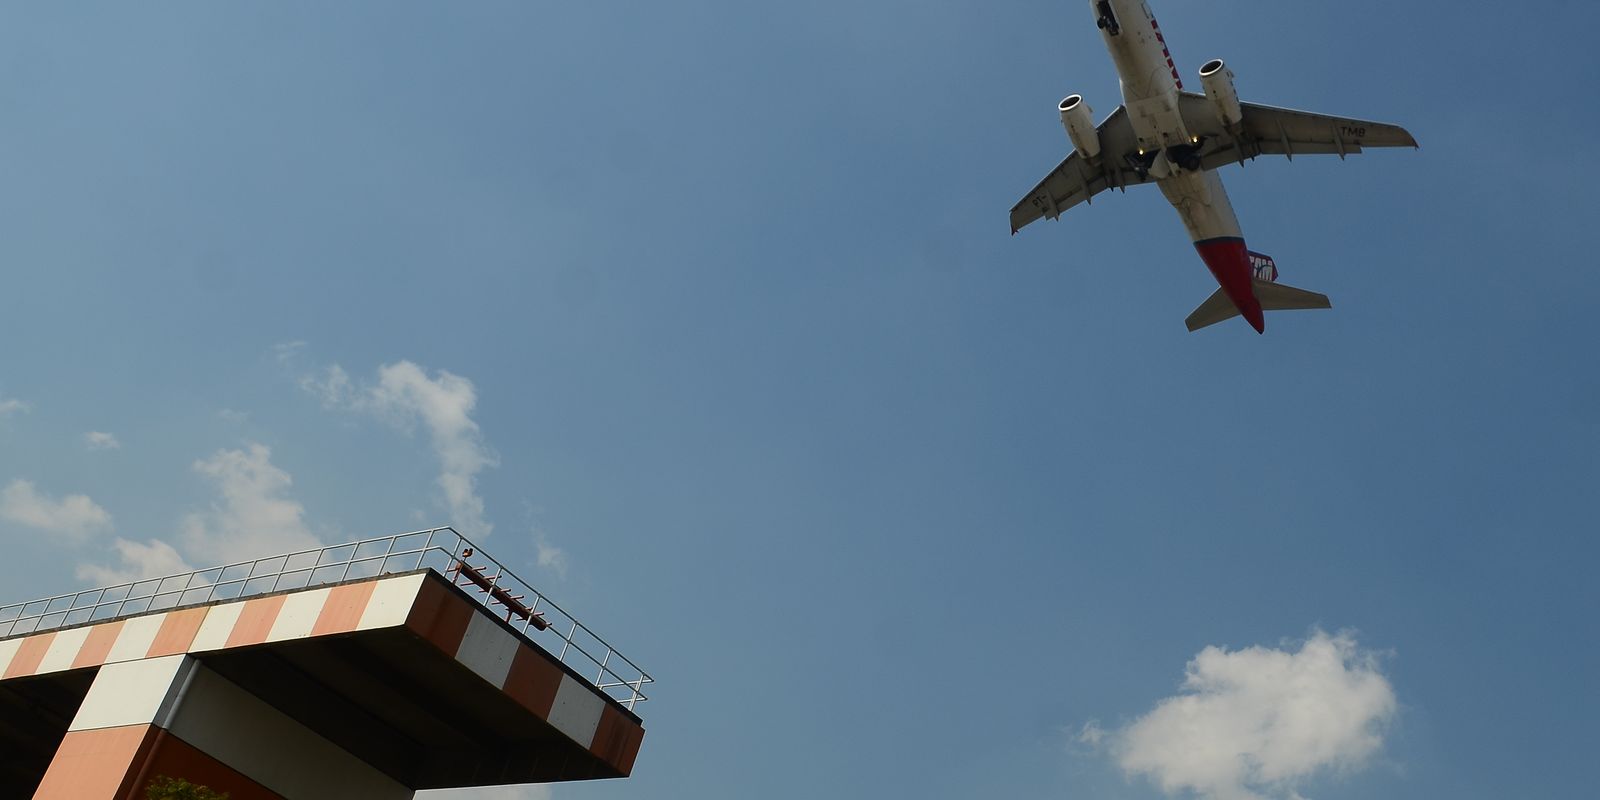 Aeroporto de Congonhas retoma operações após interrupção de energia; voos foram realocados